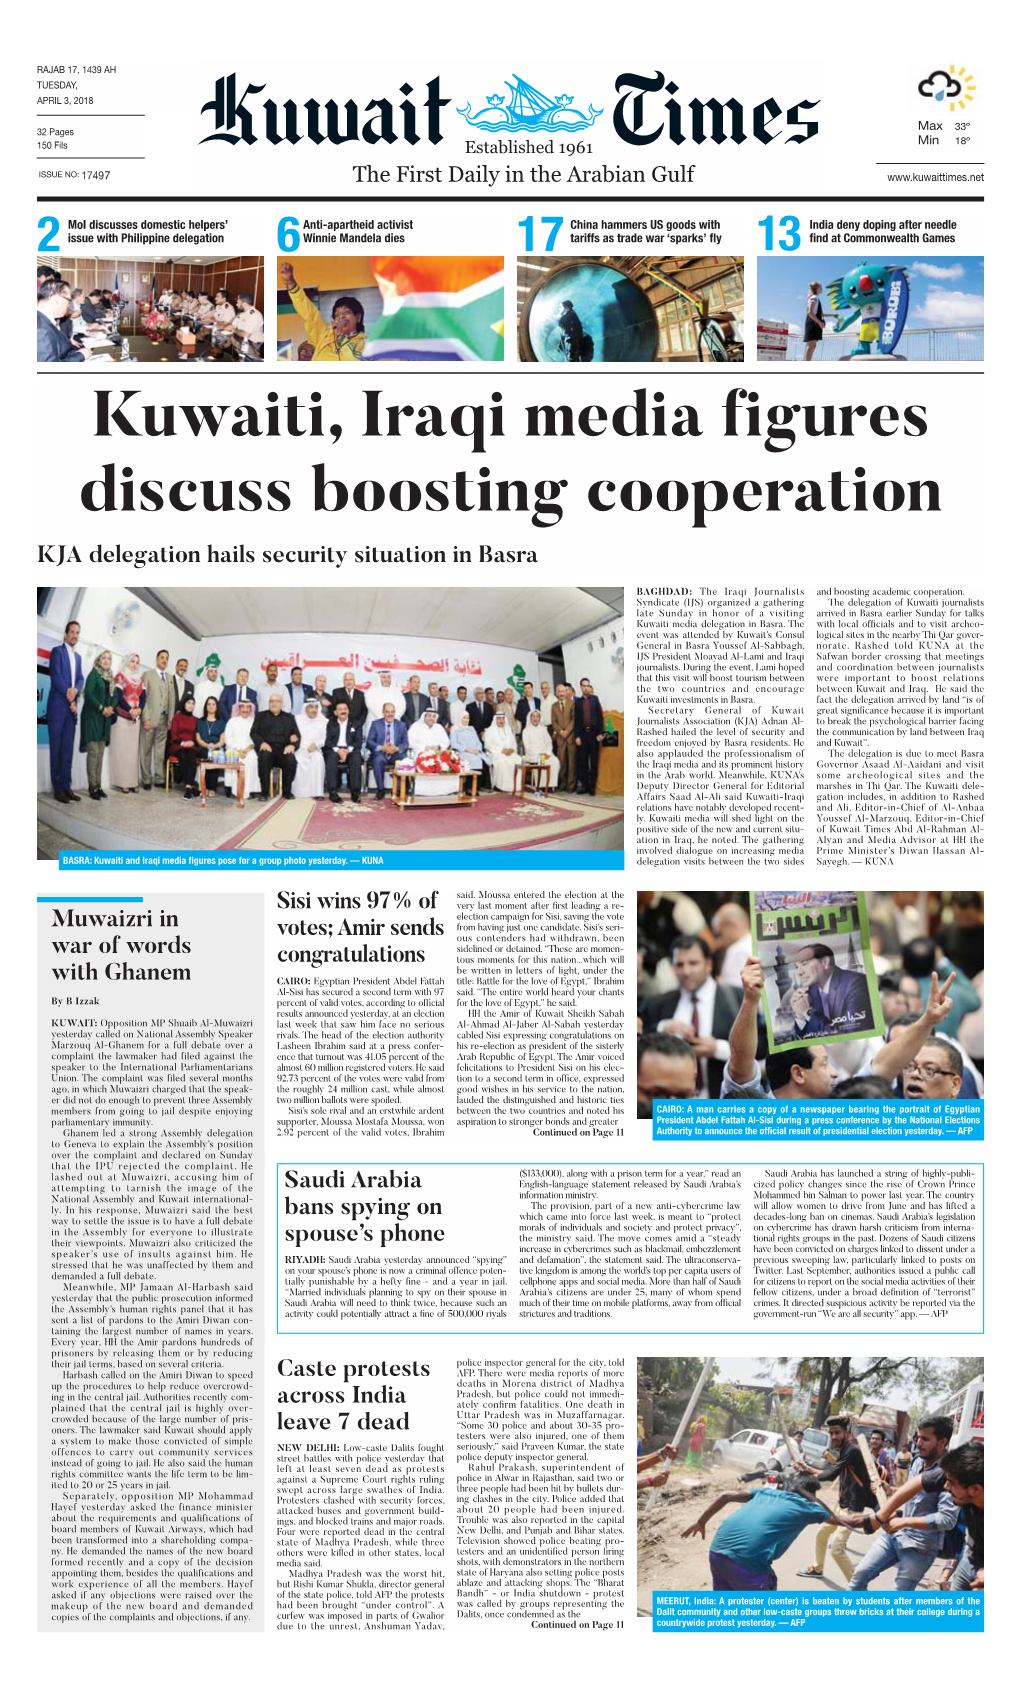 Kuwaittimes 3-4-2018.Qxp Layout 1